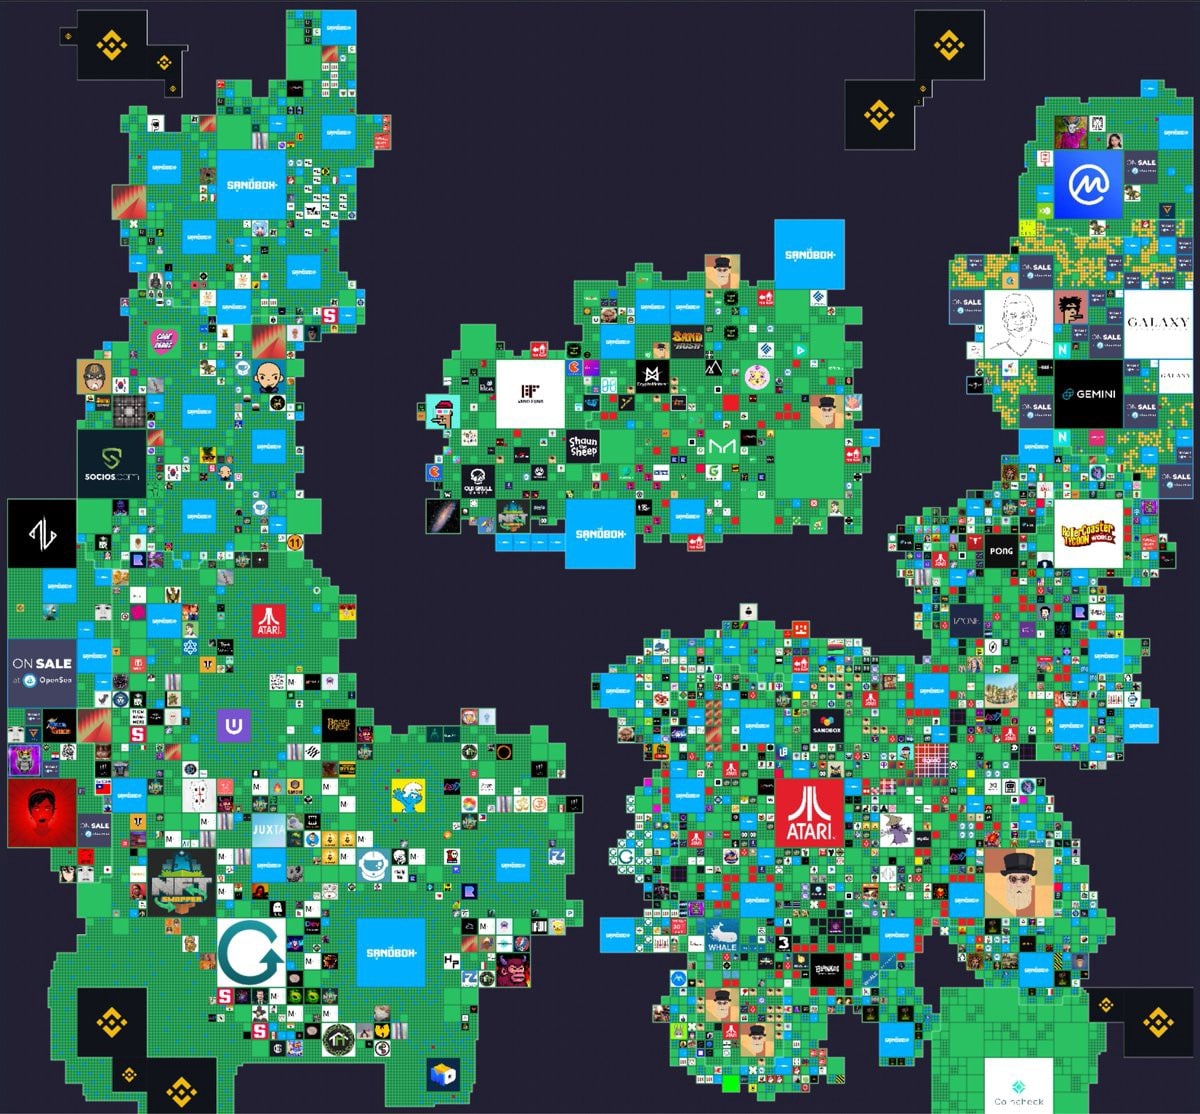 Anteprima della mappa del metaverso Sandbox